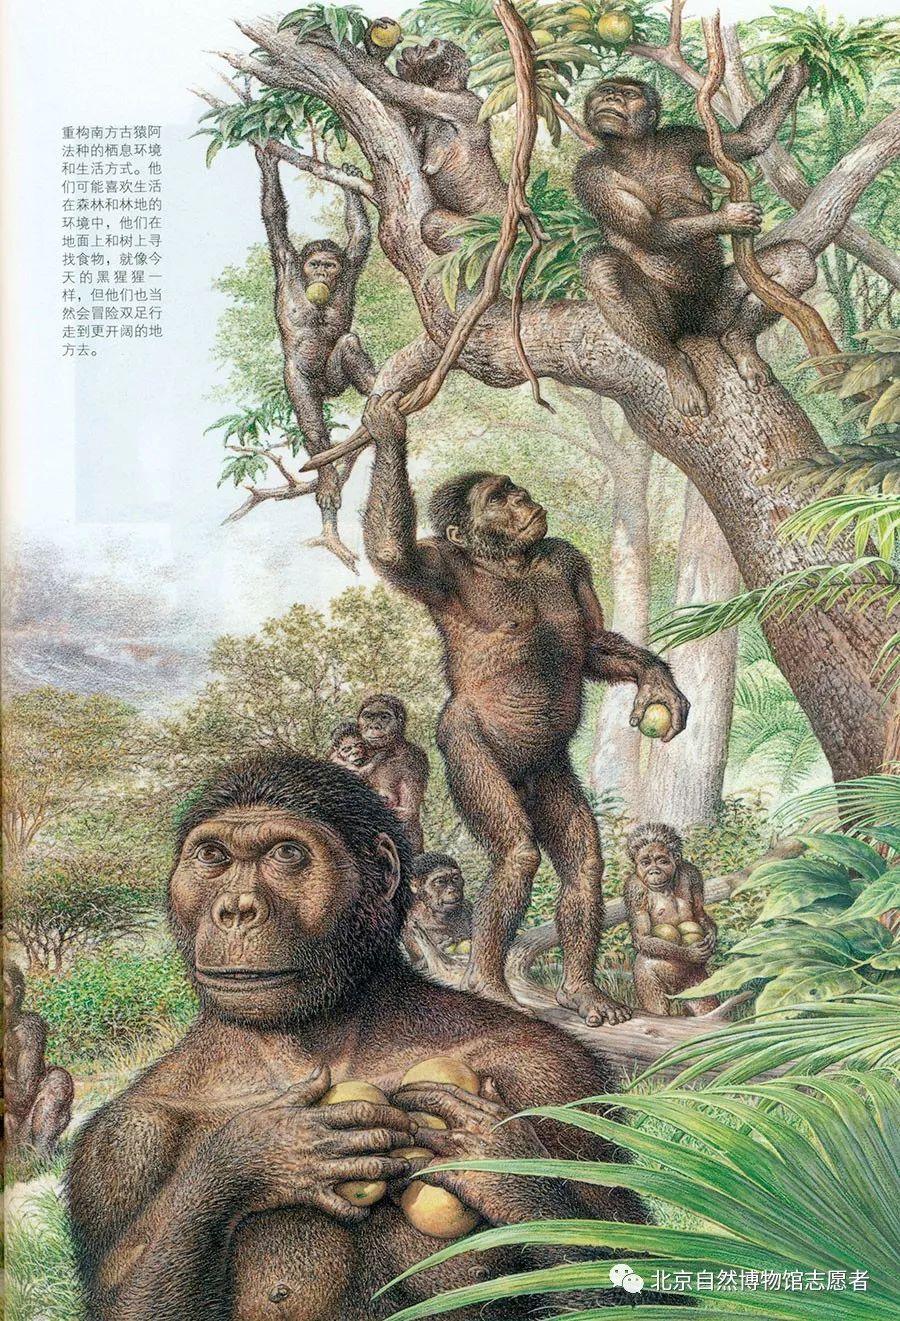 新闻详情 ▲ 人类早期祖先之一南方古猿想象图.